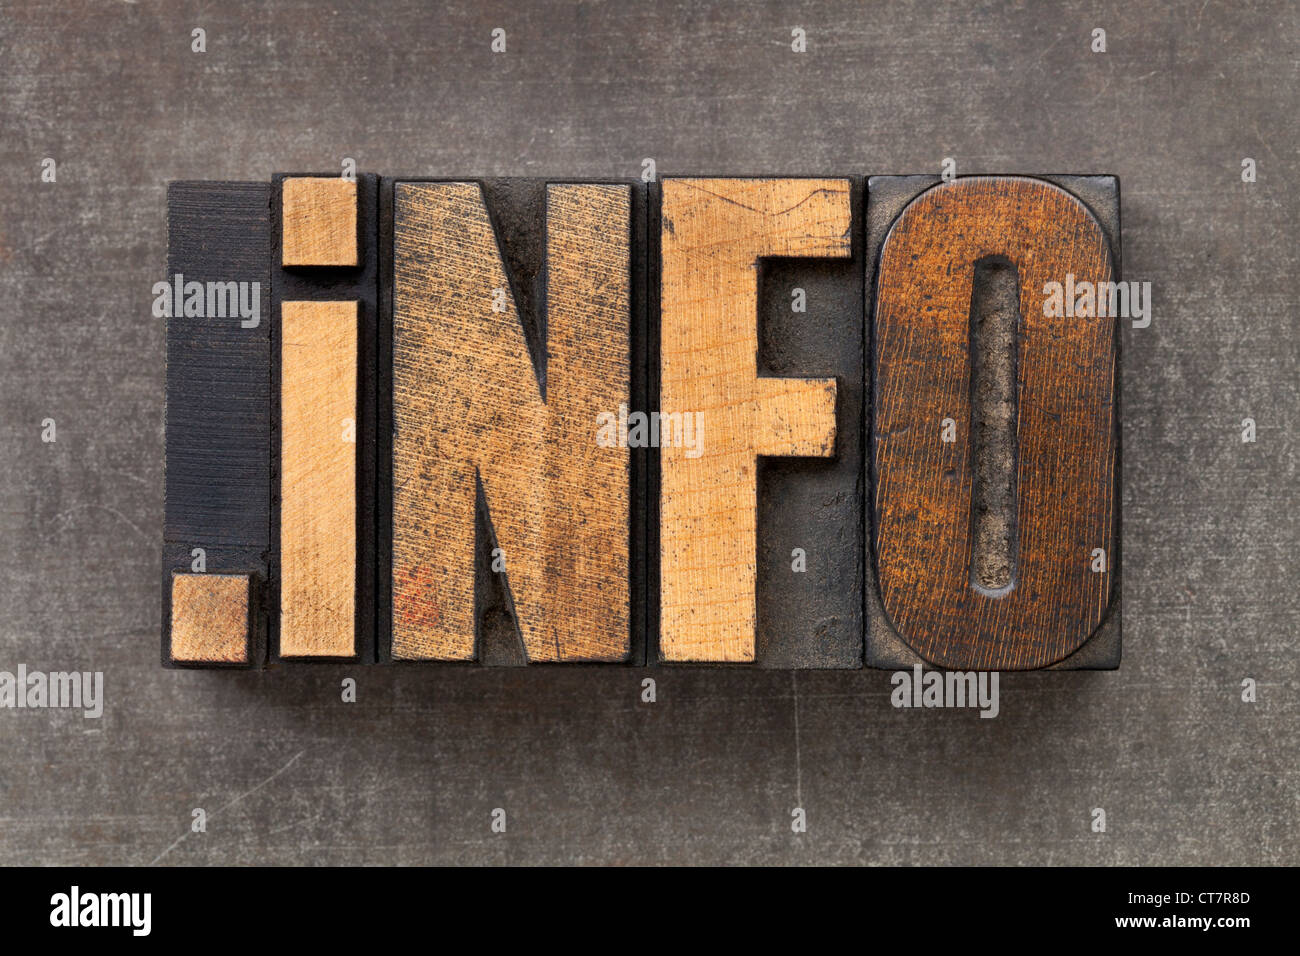 Dot info - domaine internet pour ressources d'information dans la typographie en bois vintage blocs sur une feuille de métal grunge Banque D'Images